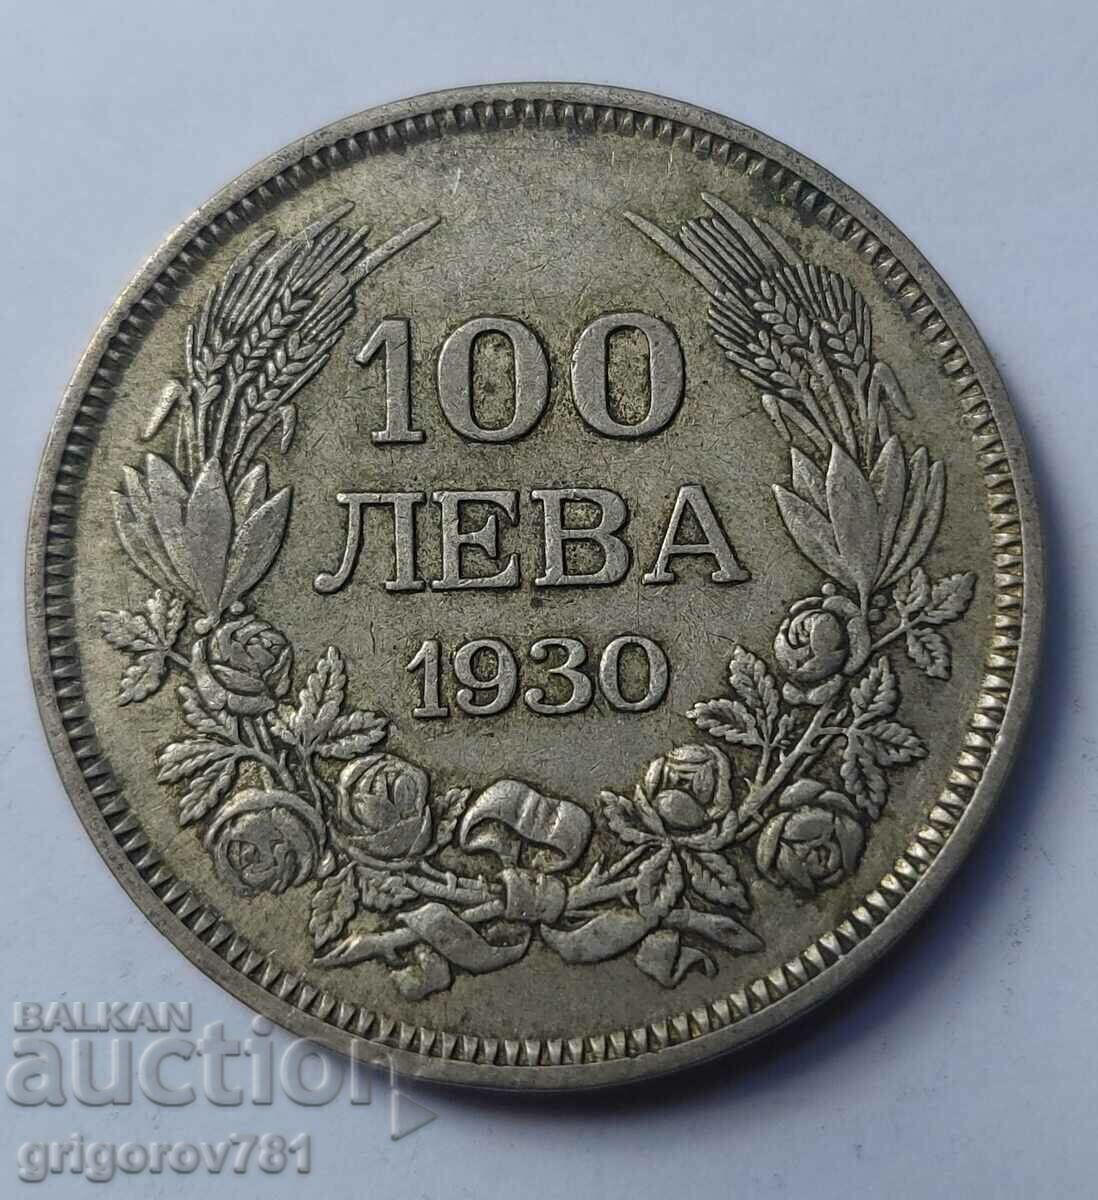 Ασήμι 100 λέβα Βουλγαρία 1930 - ασημένιο νόμισμα #40